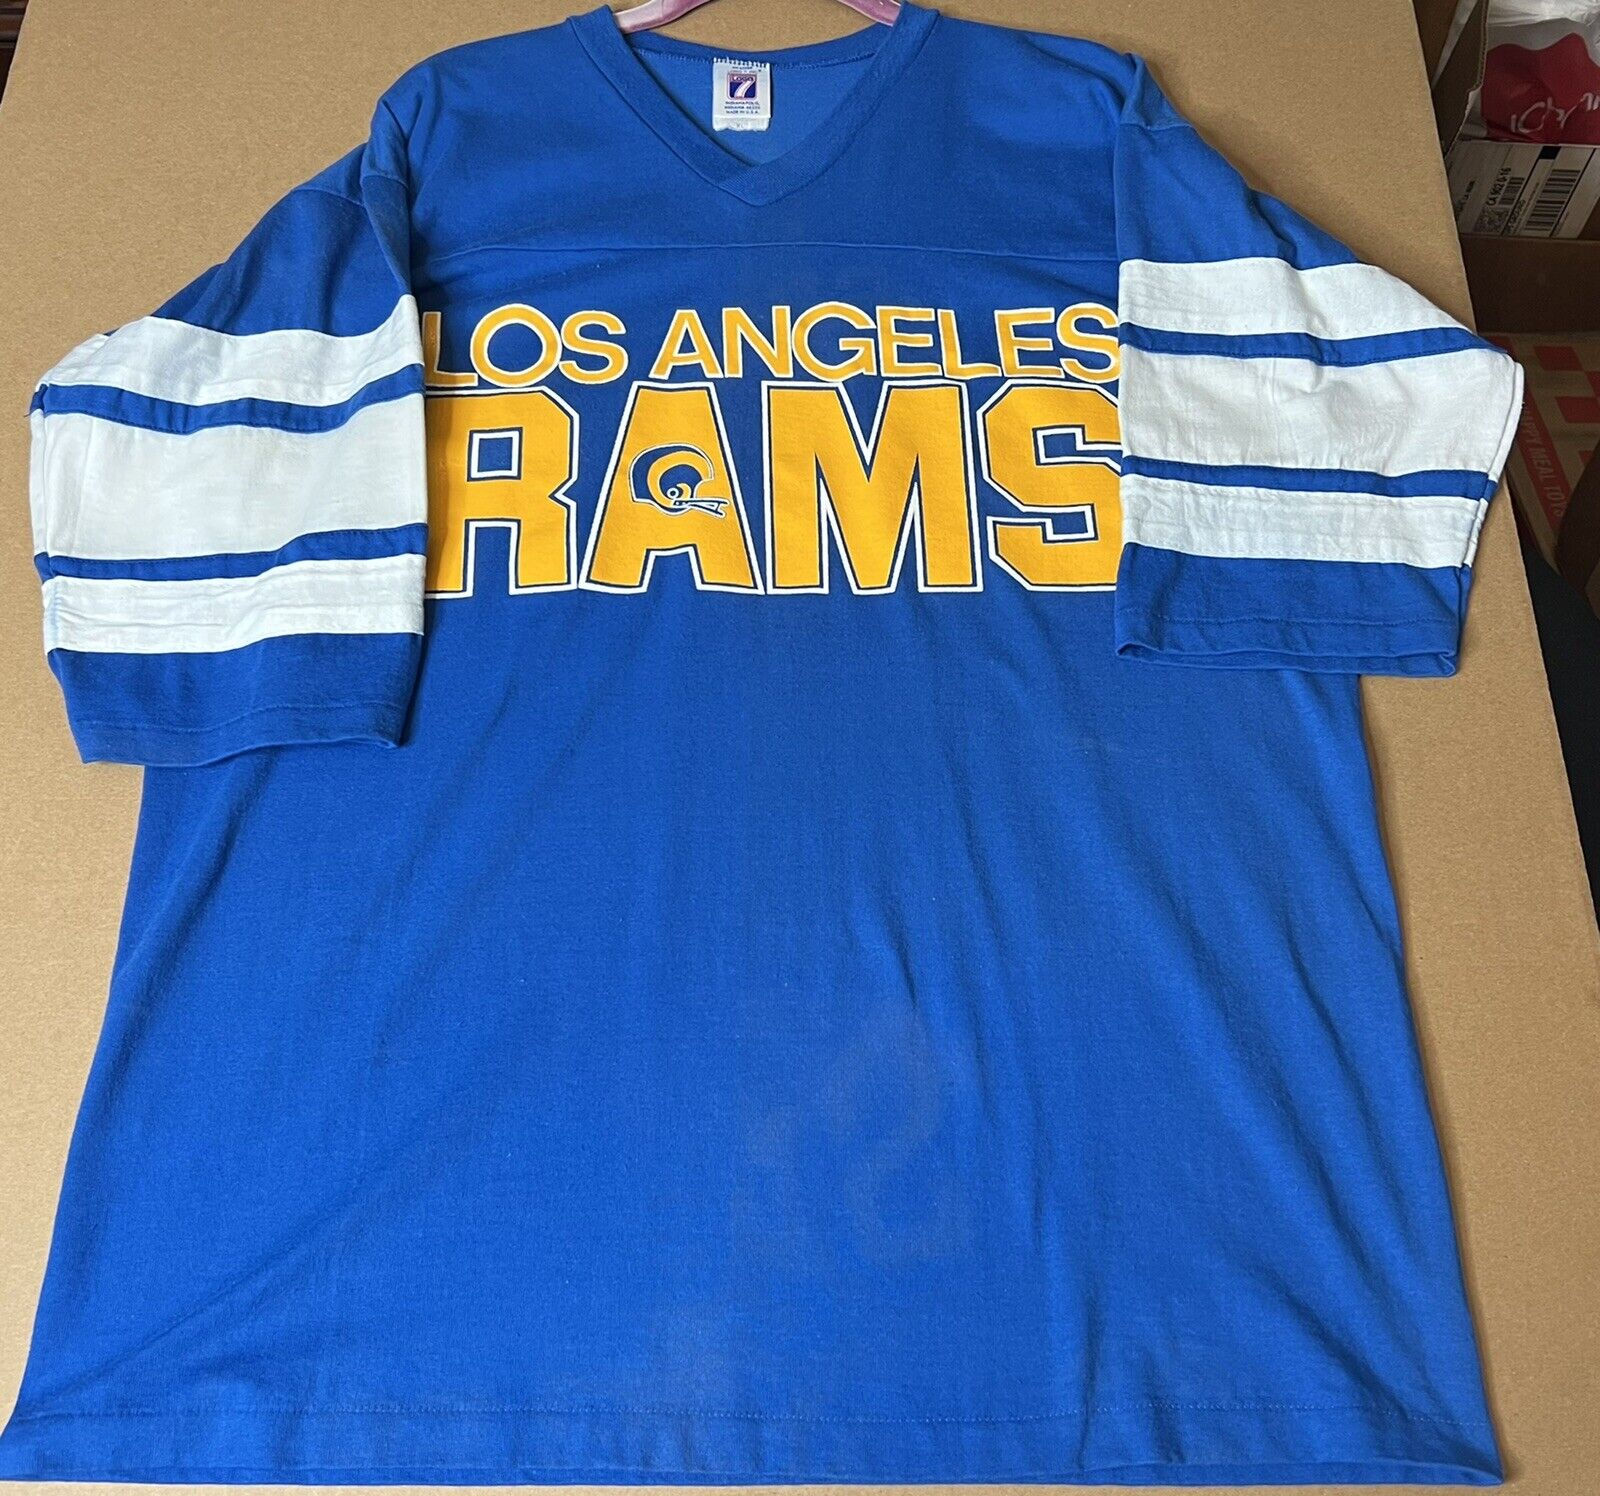 rams logo shirt